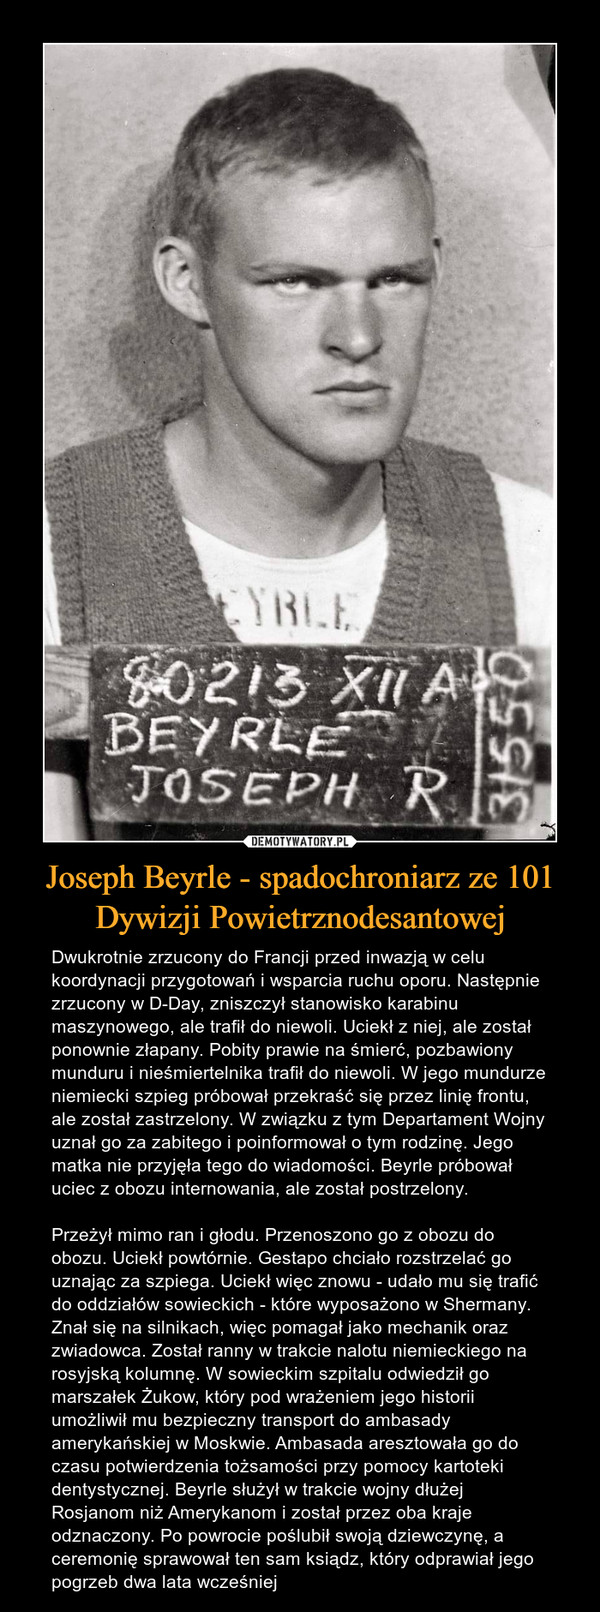 Joseph Beyrle - spadochroniarz ze 101 Dywizji Powietrznodesantowej